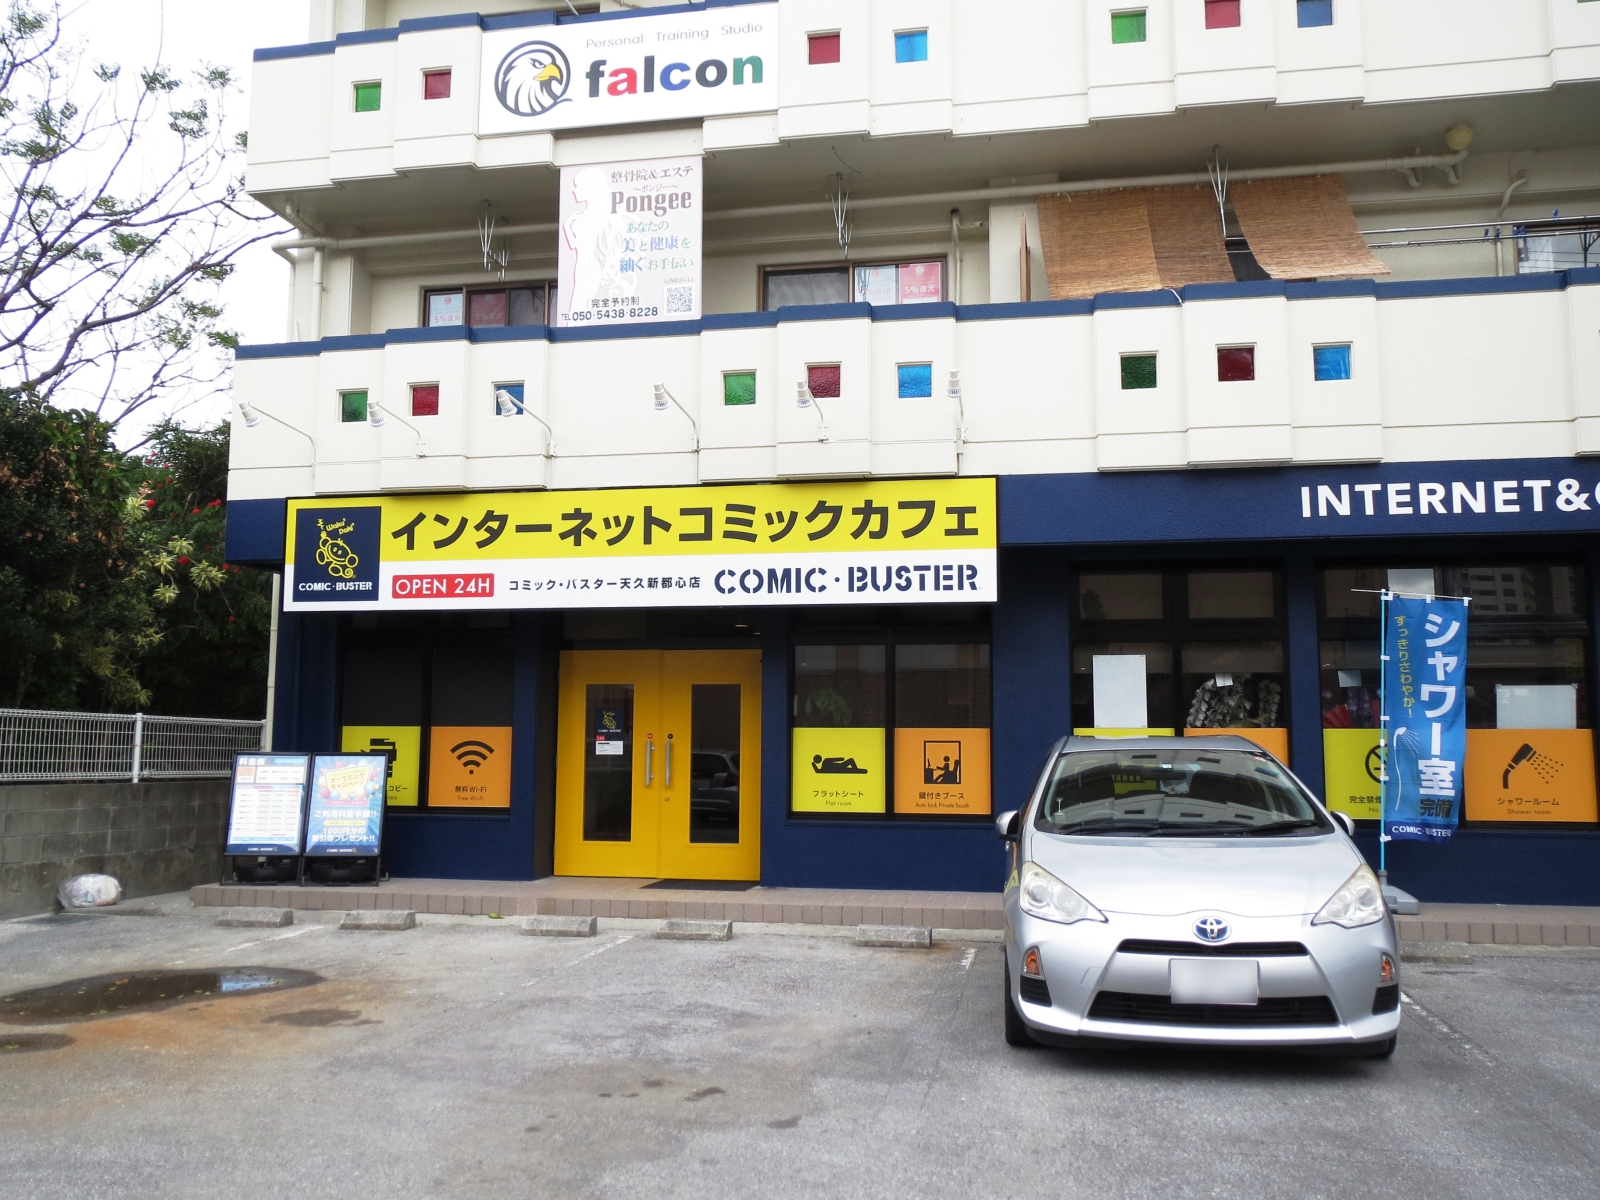 オートロック完備のネットカフェ コミックバスター天久新都心店 がオープンしていました 沖縄なう